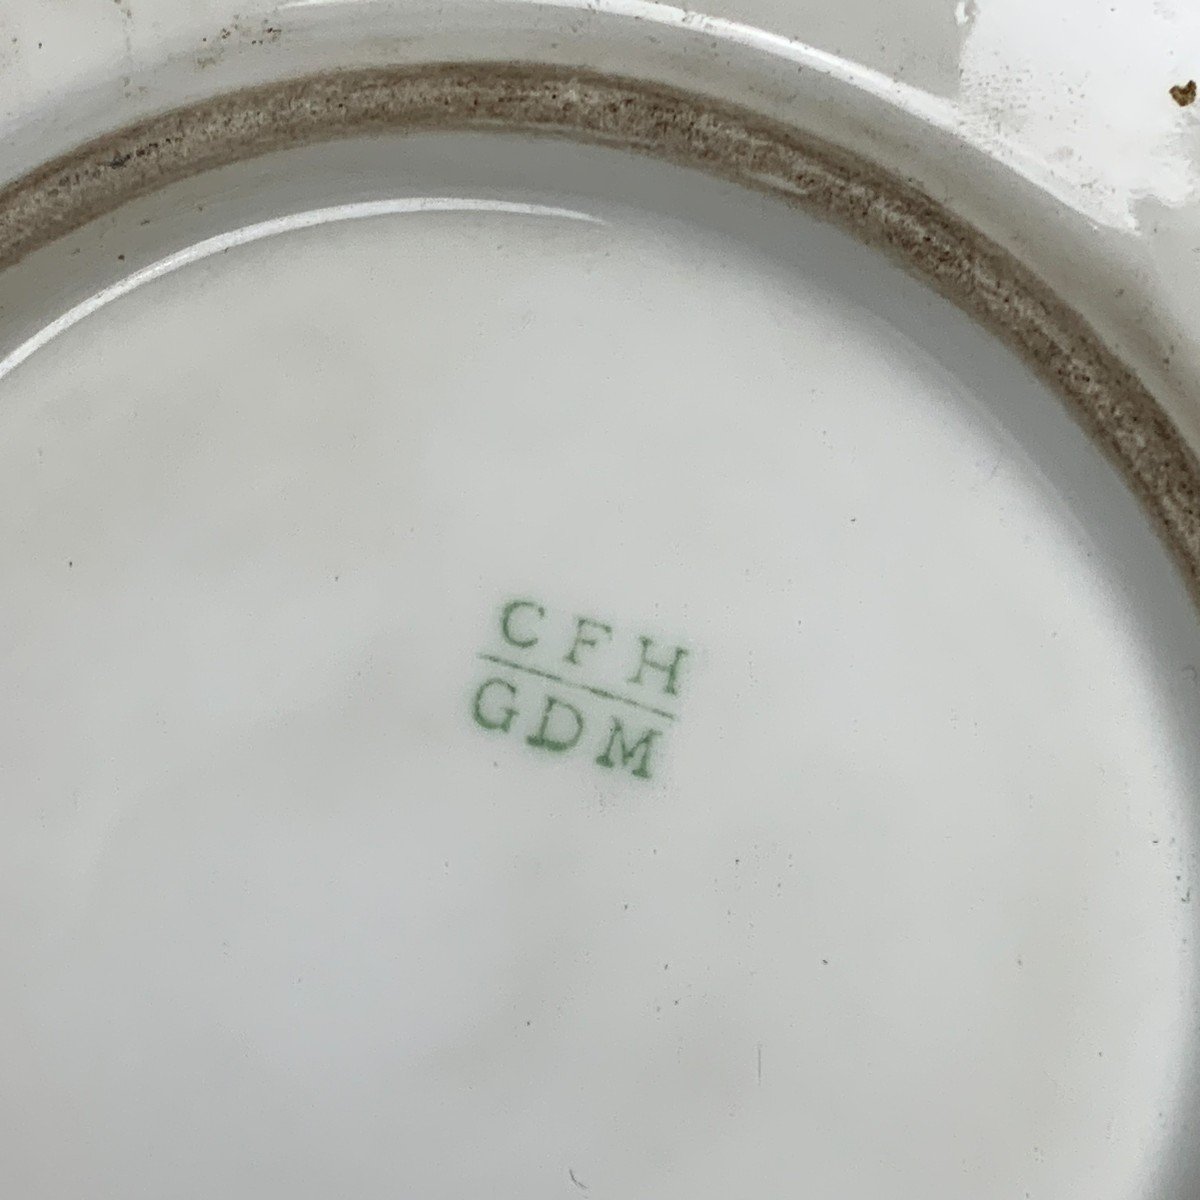 Limoges Porcelain Plate - Haviland - Signed Cfh Gdm - Late Nineteenth-photo-2